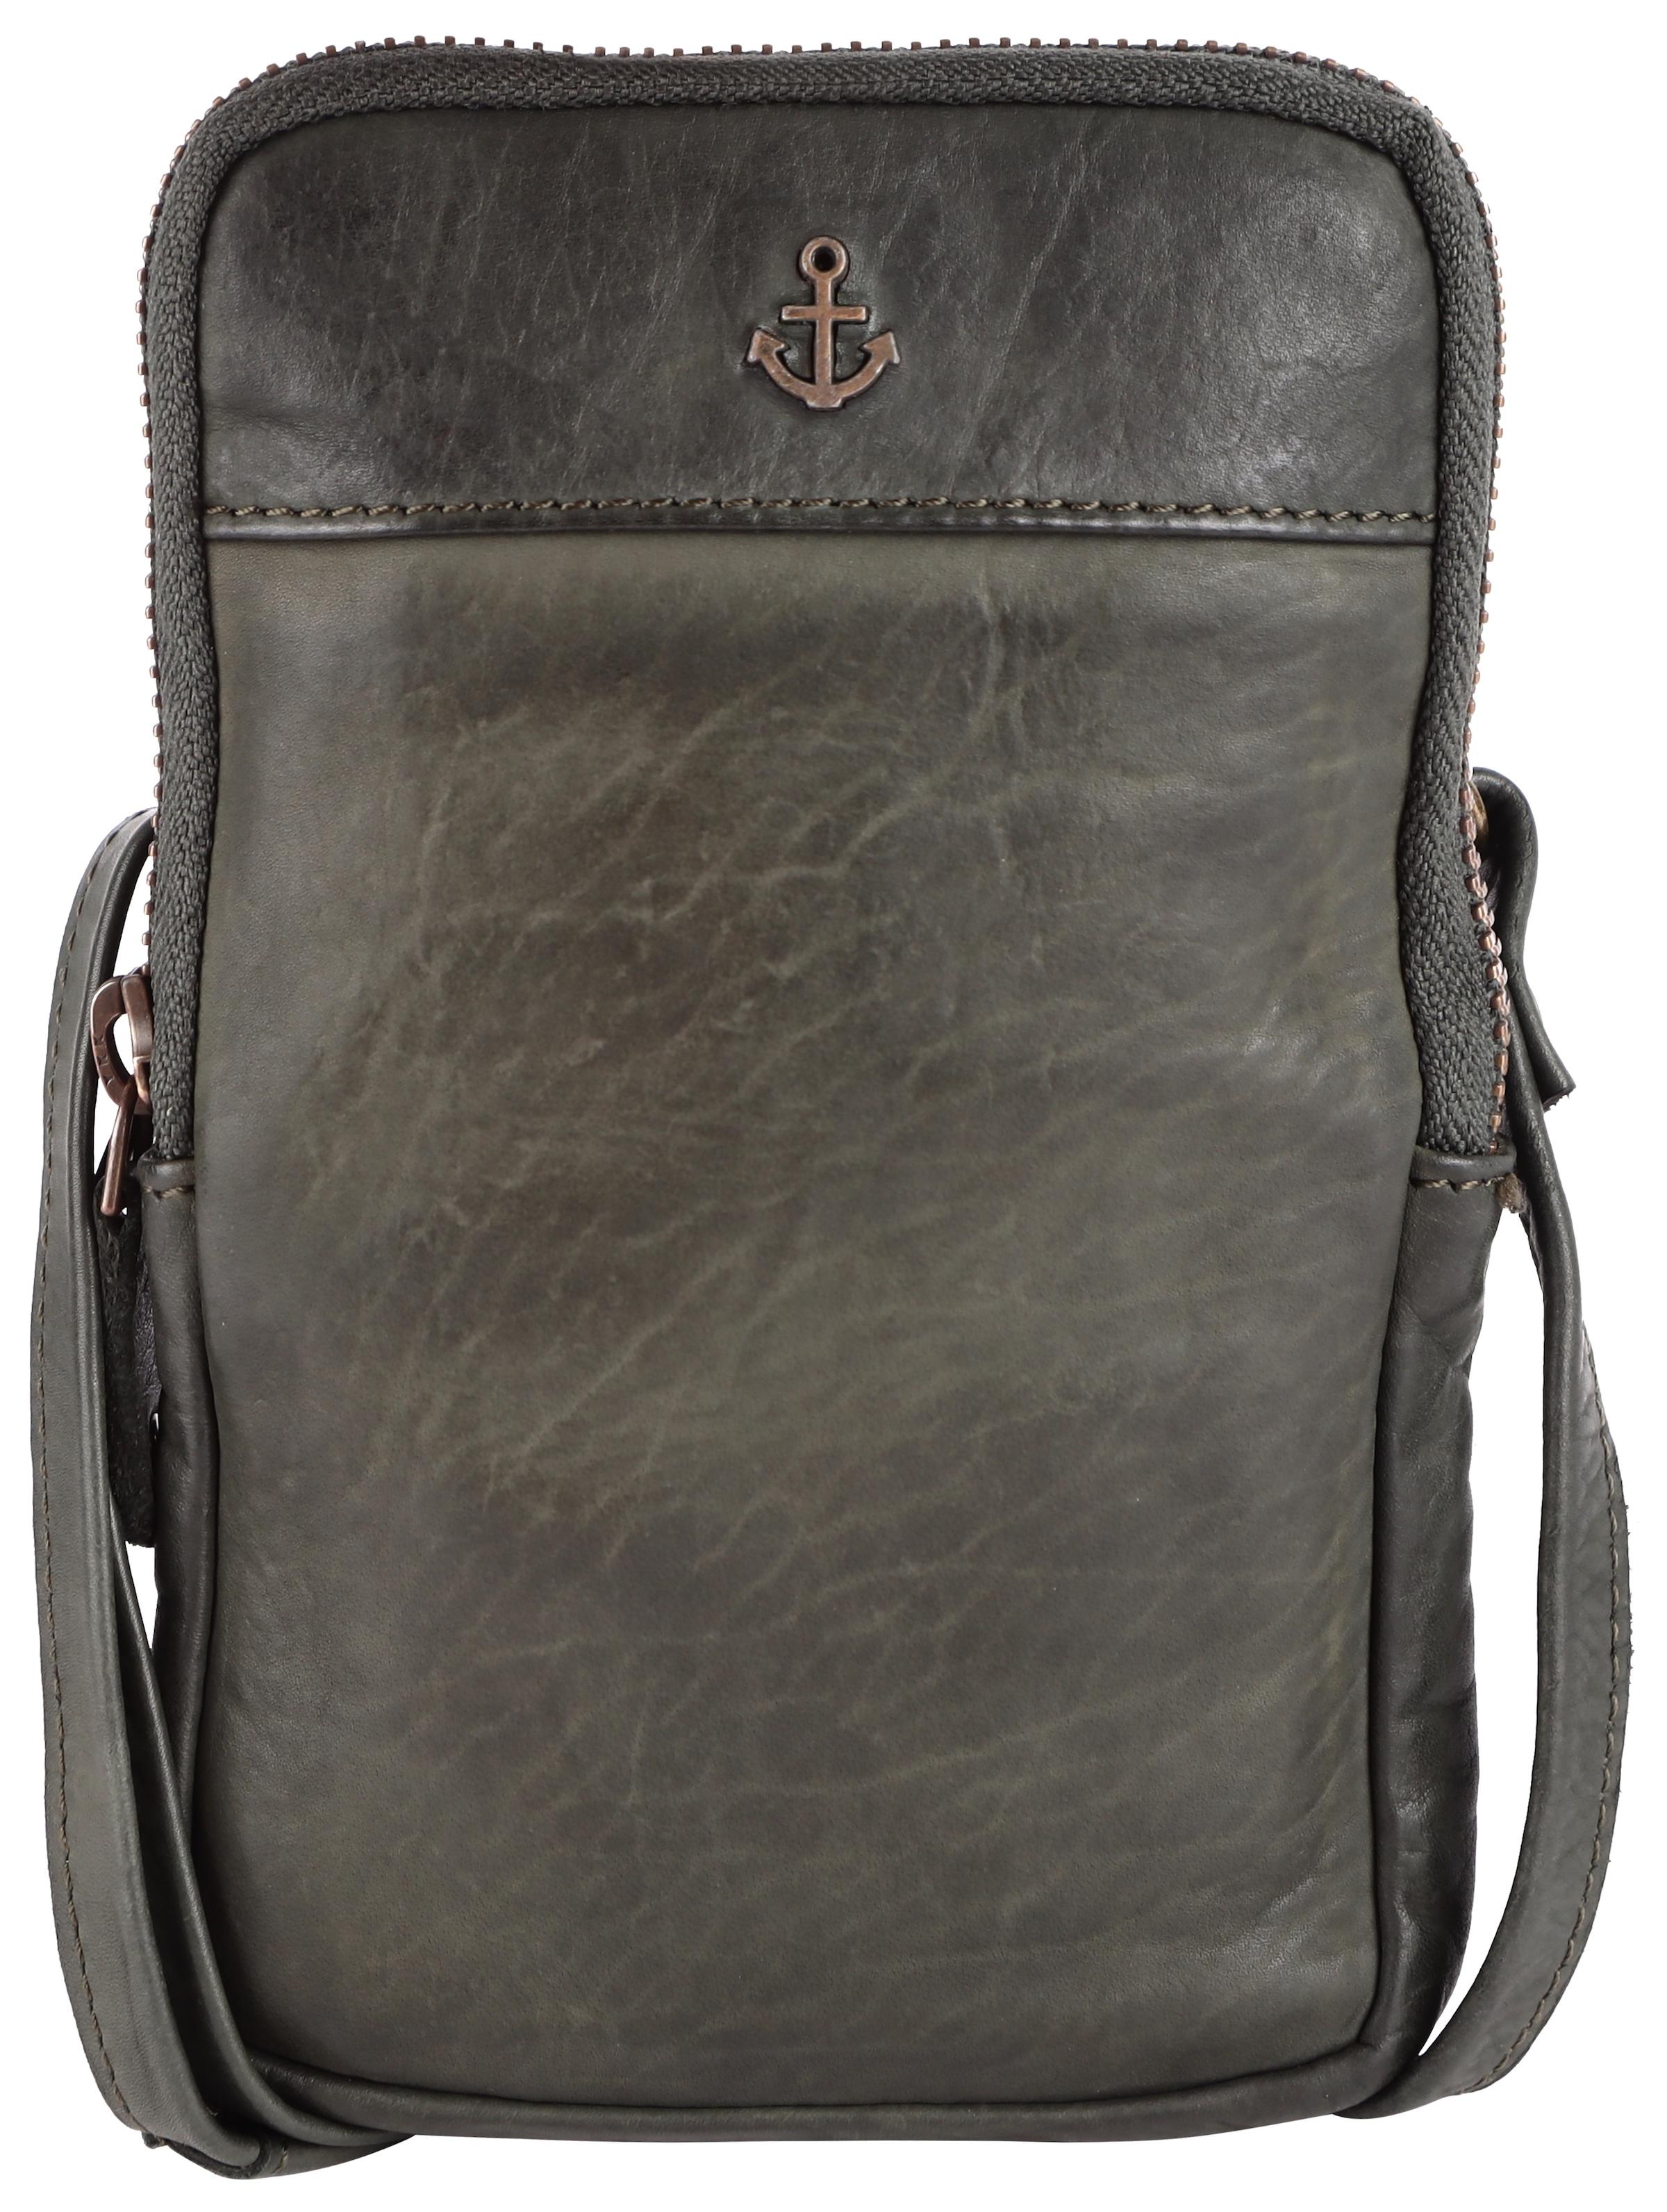 Mini Bag »Benita«, aus griffigem Leder mit typischen Marken-Anker-Label